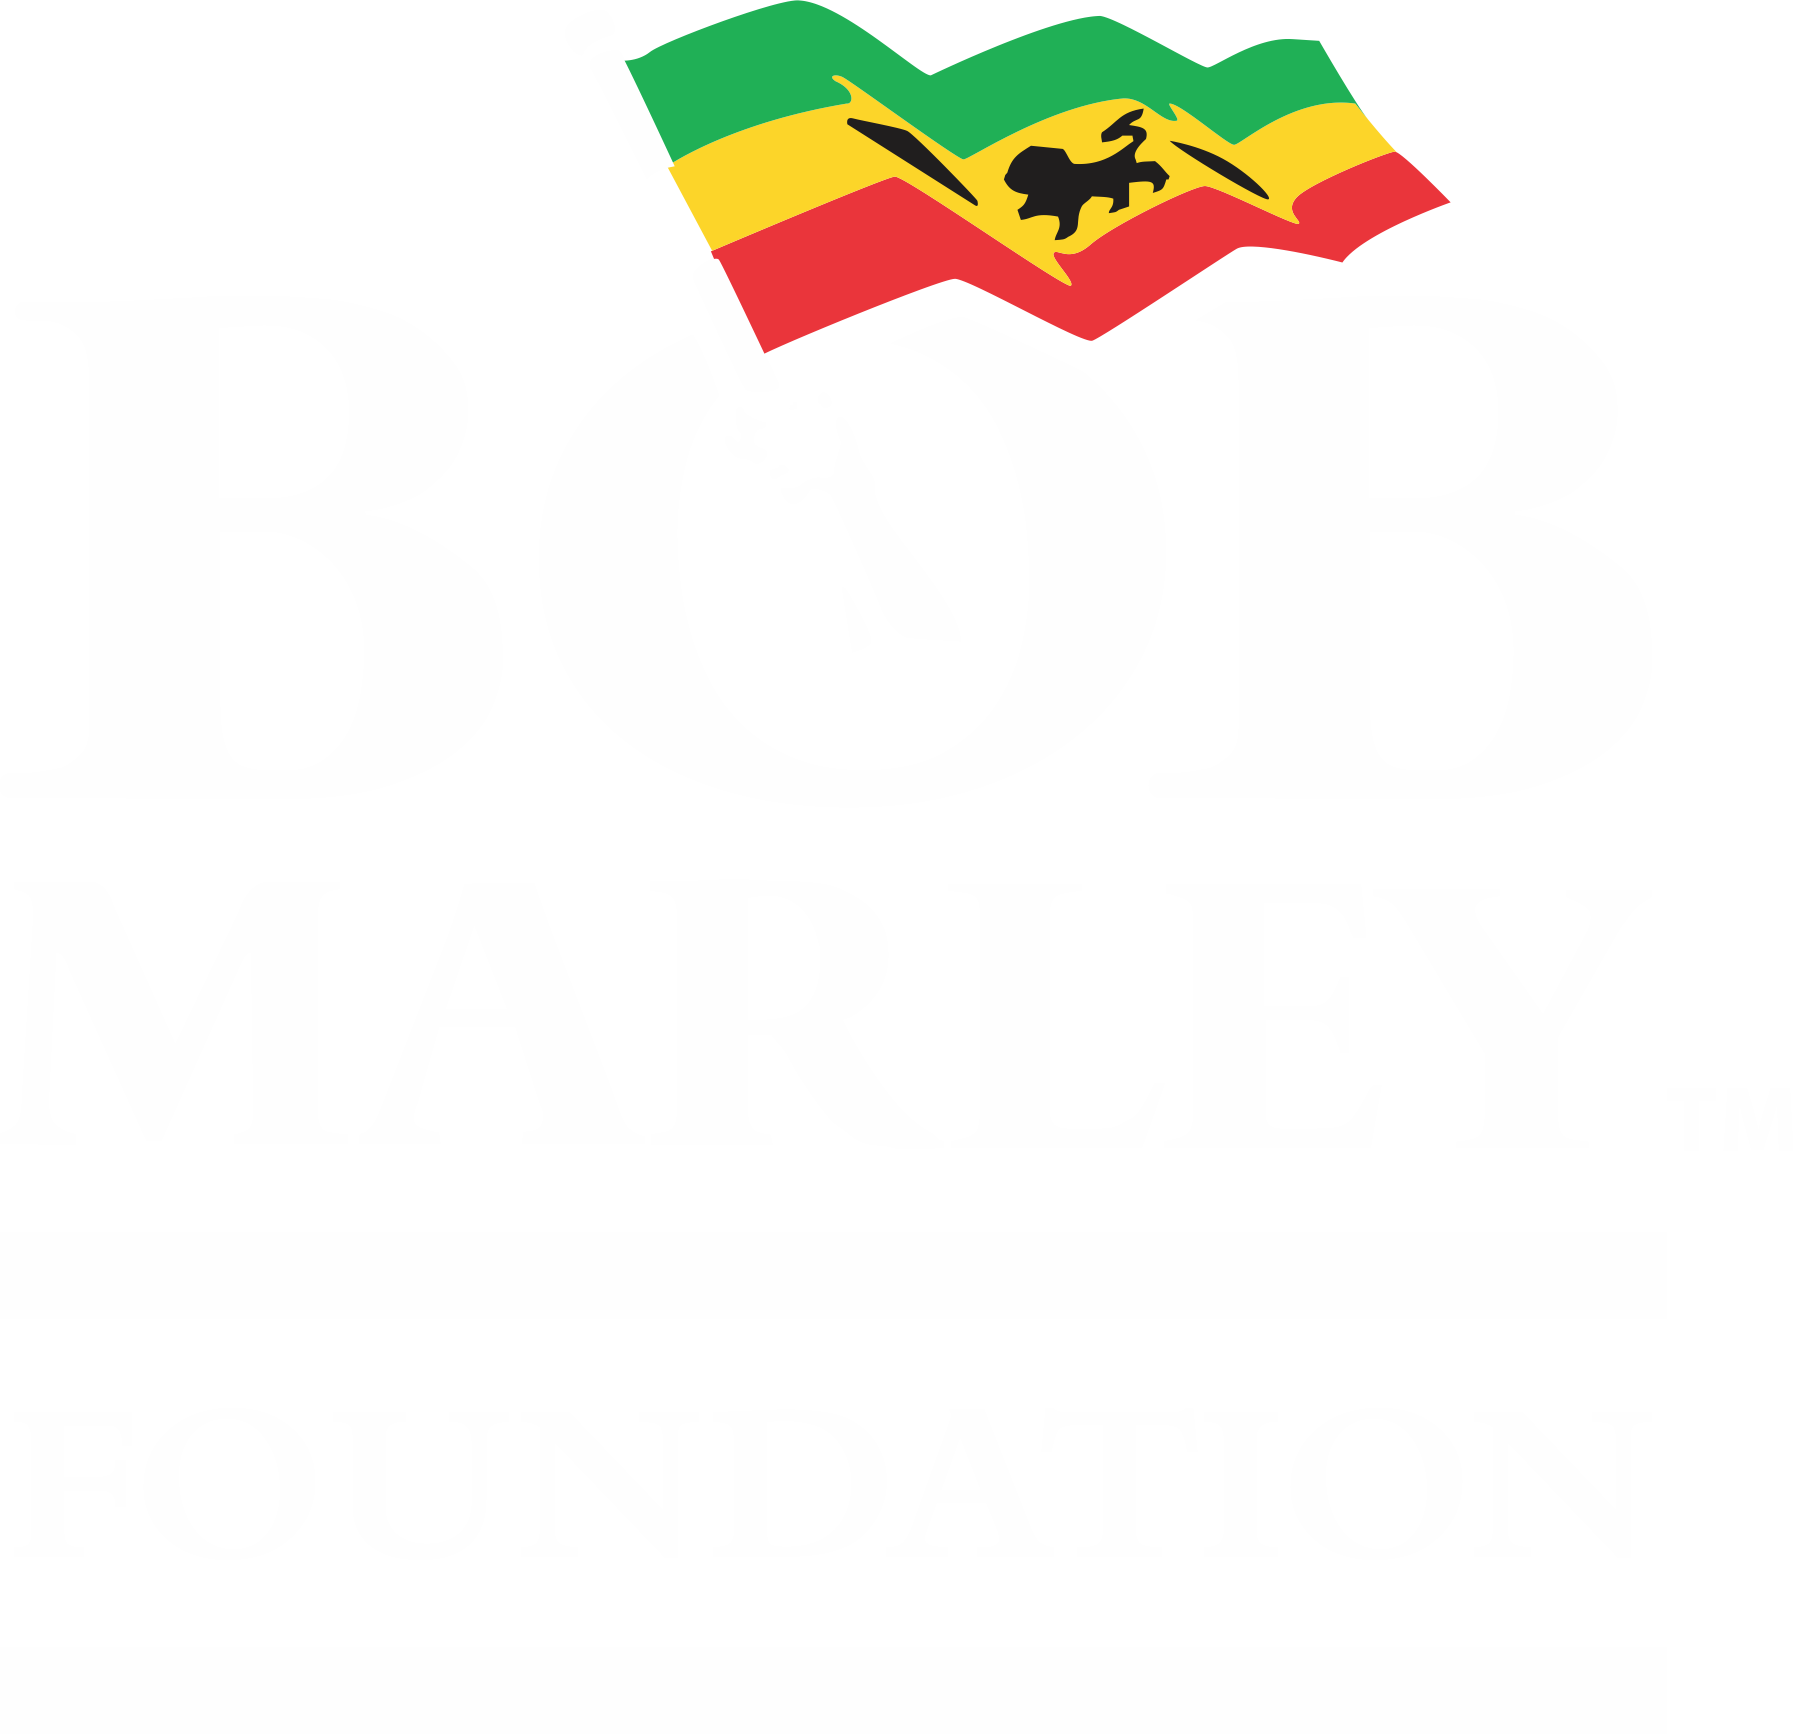 Bob Marley Foundation logo